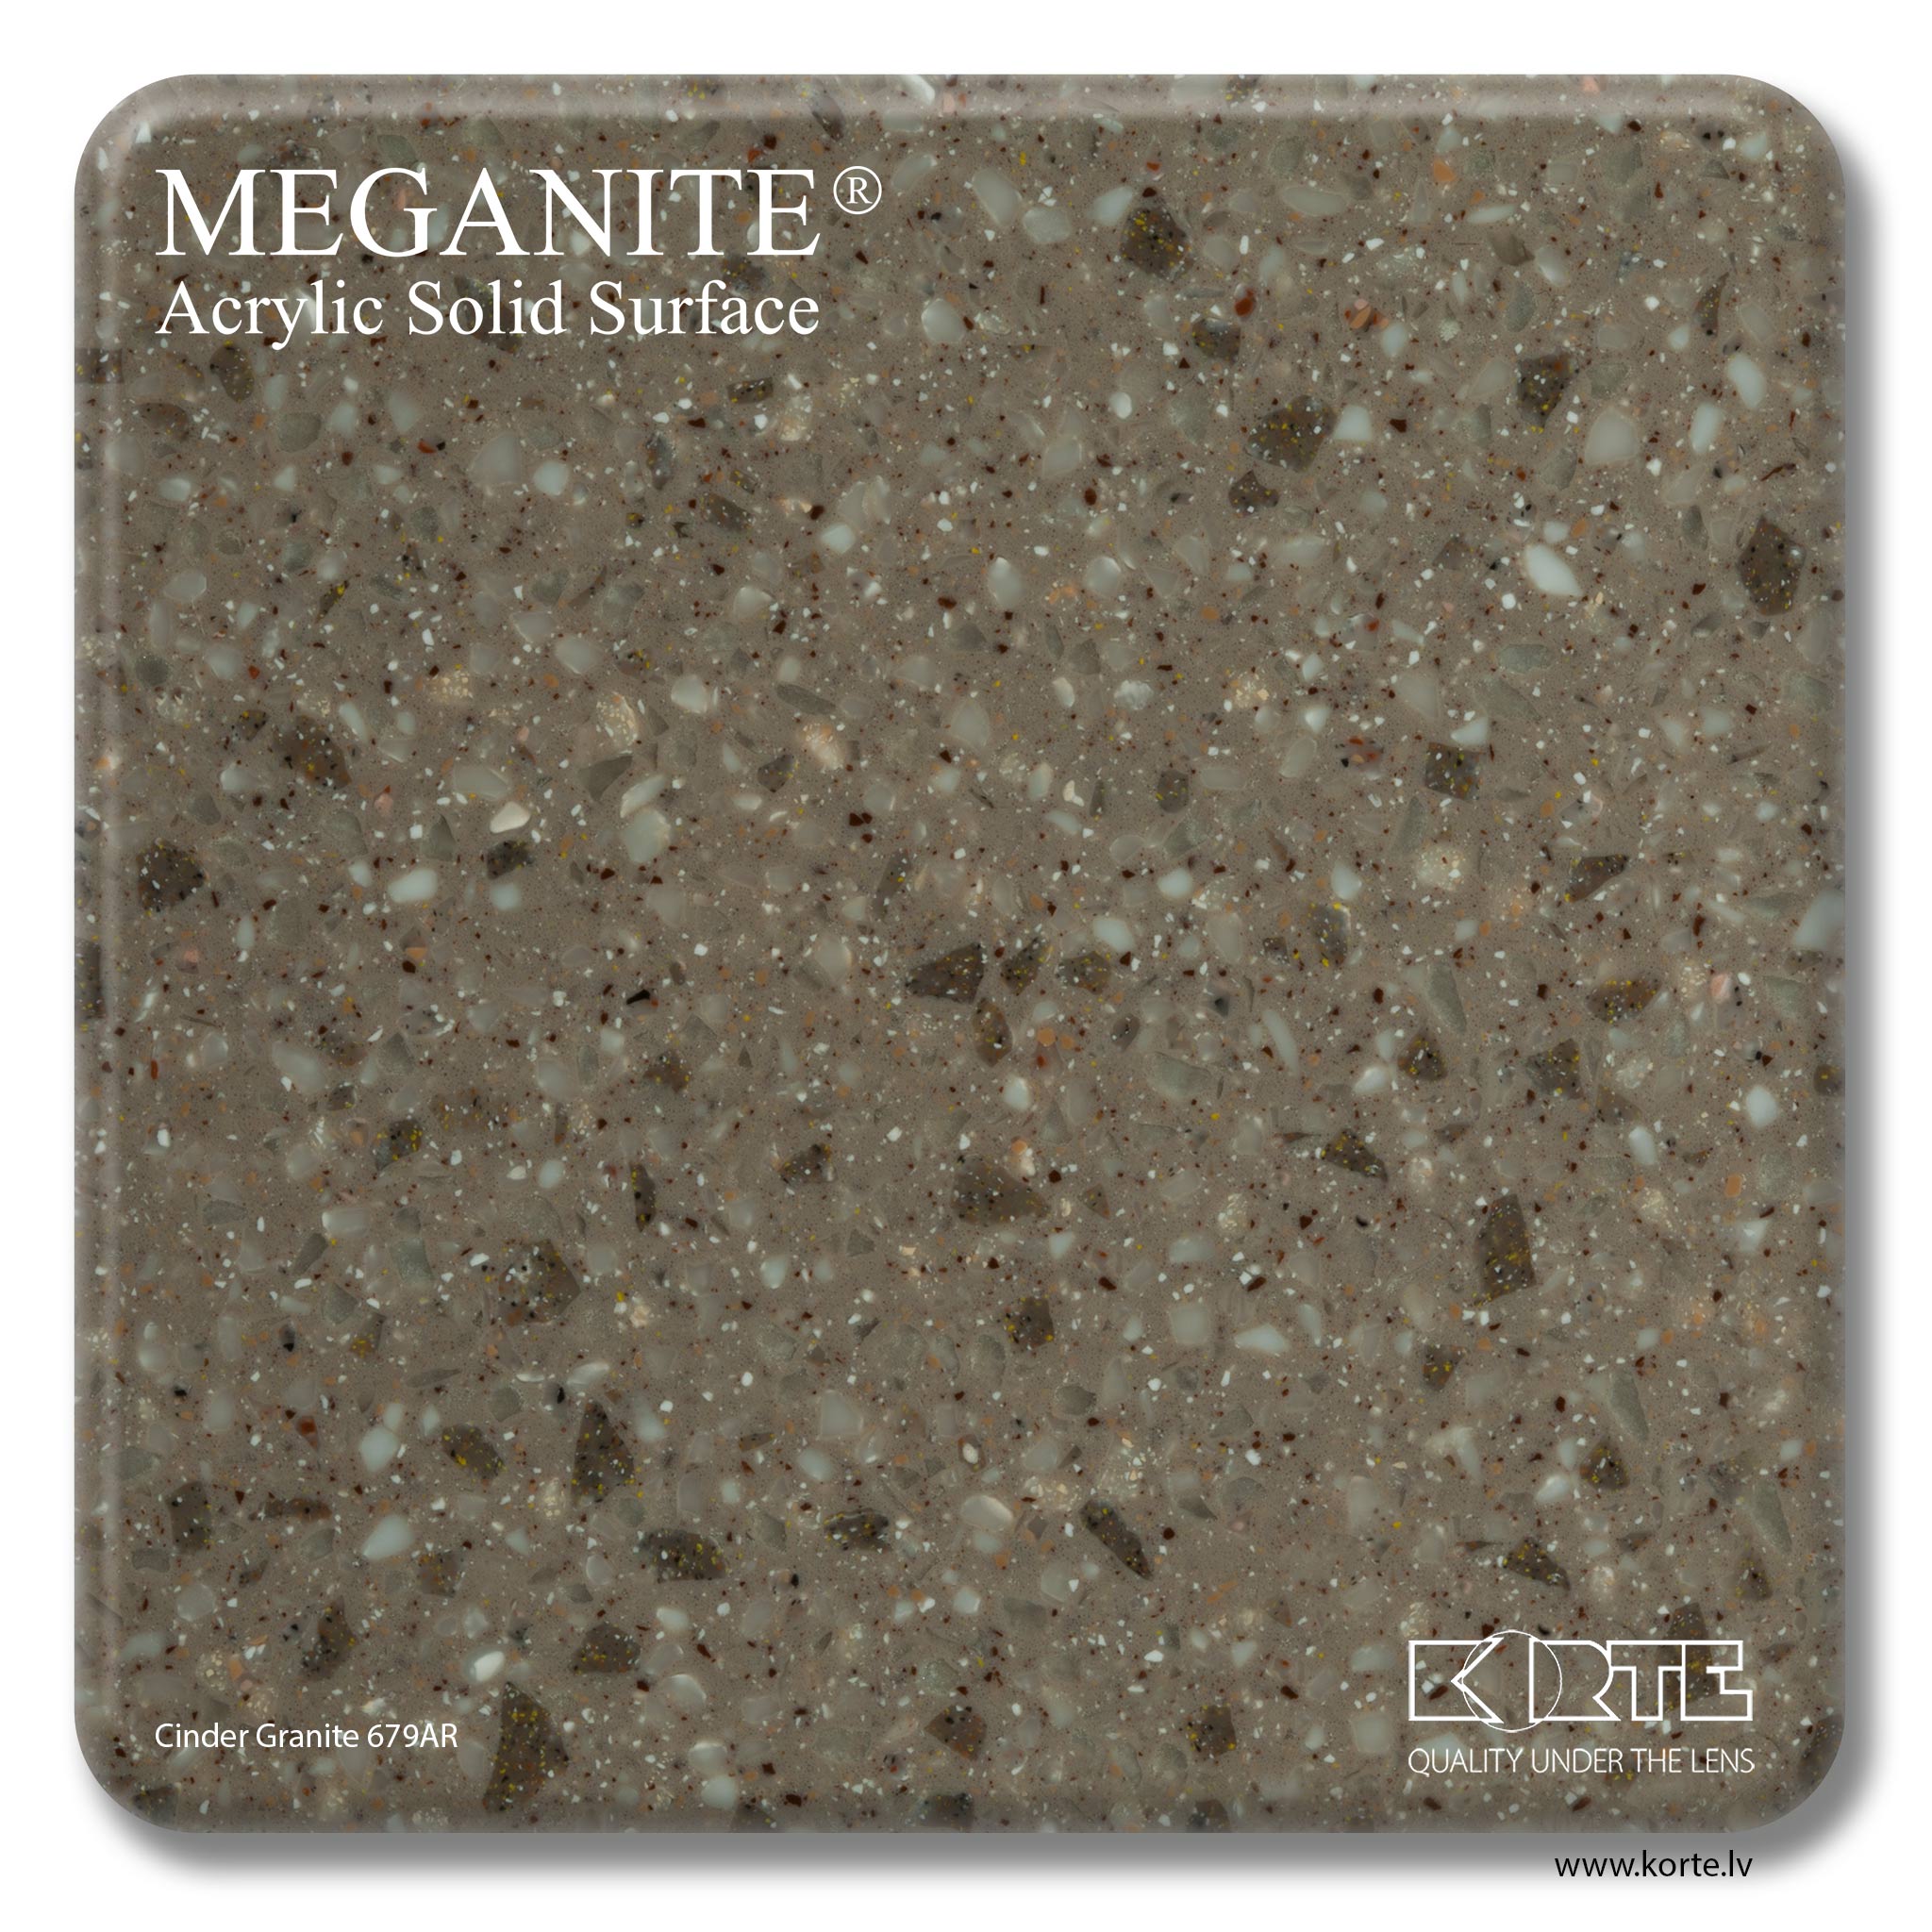 Meganite Cinder Granite 679AR